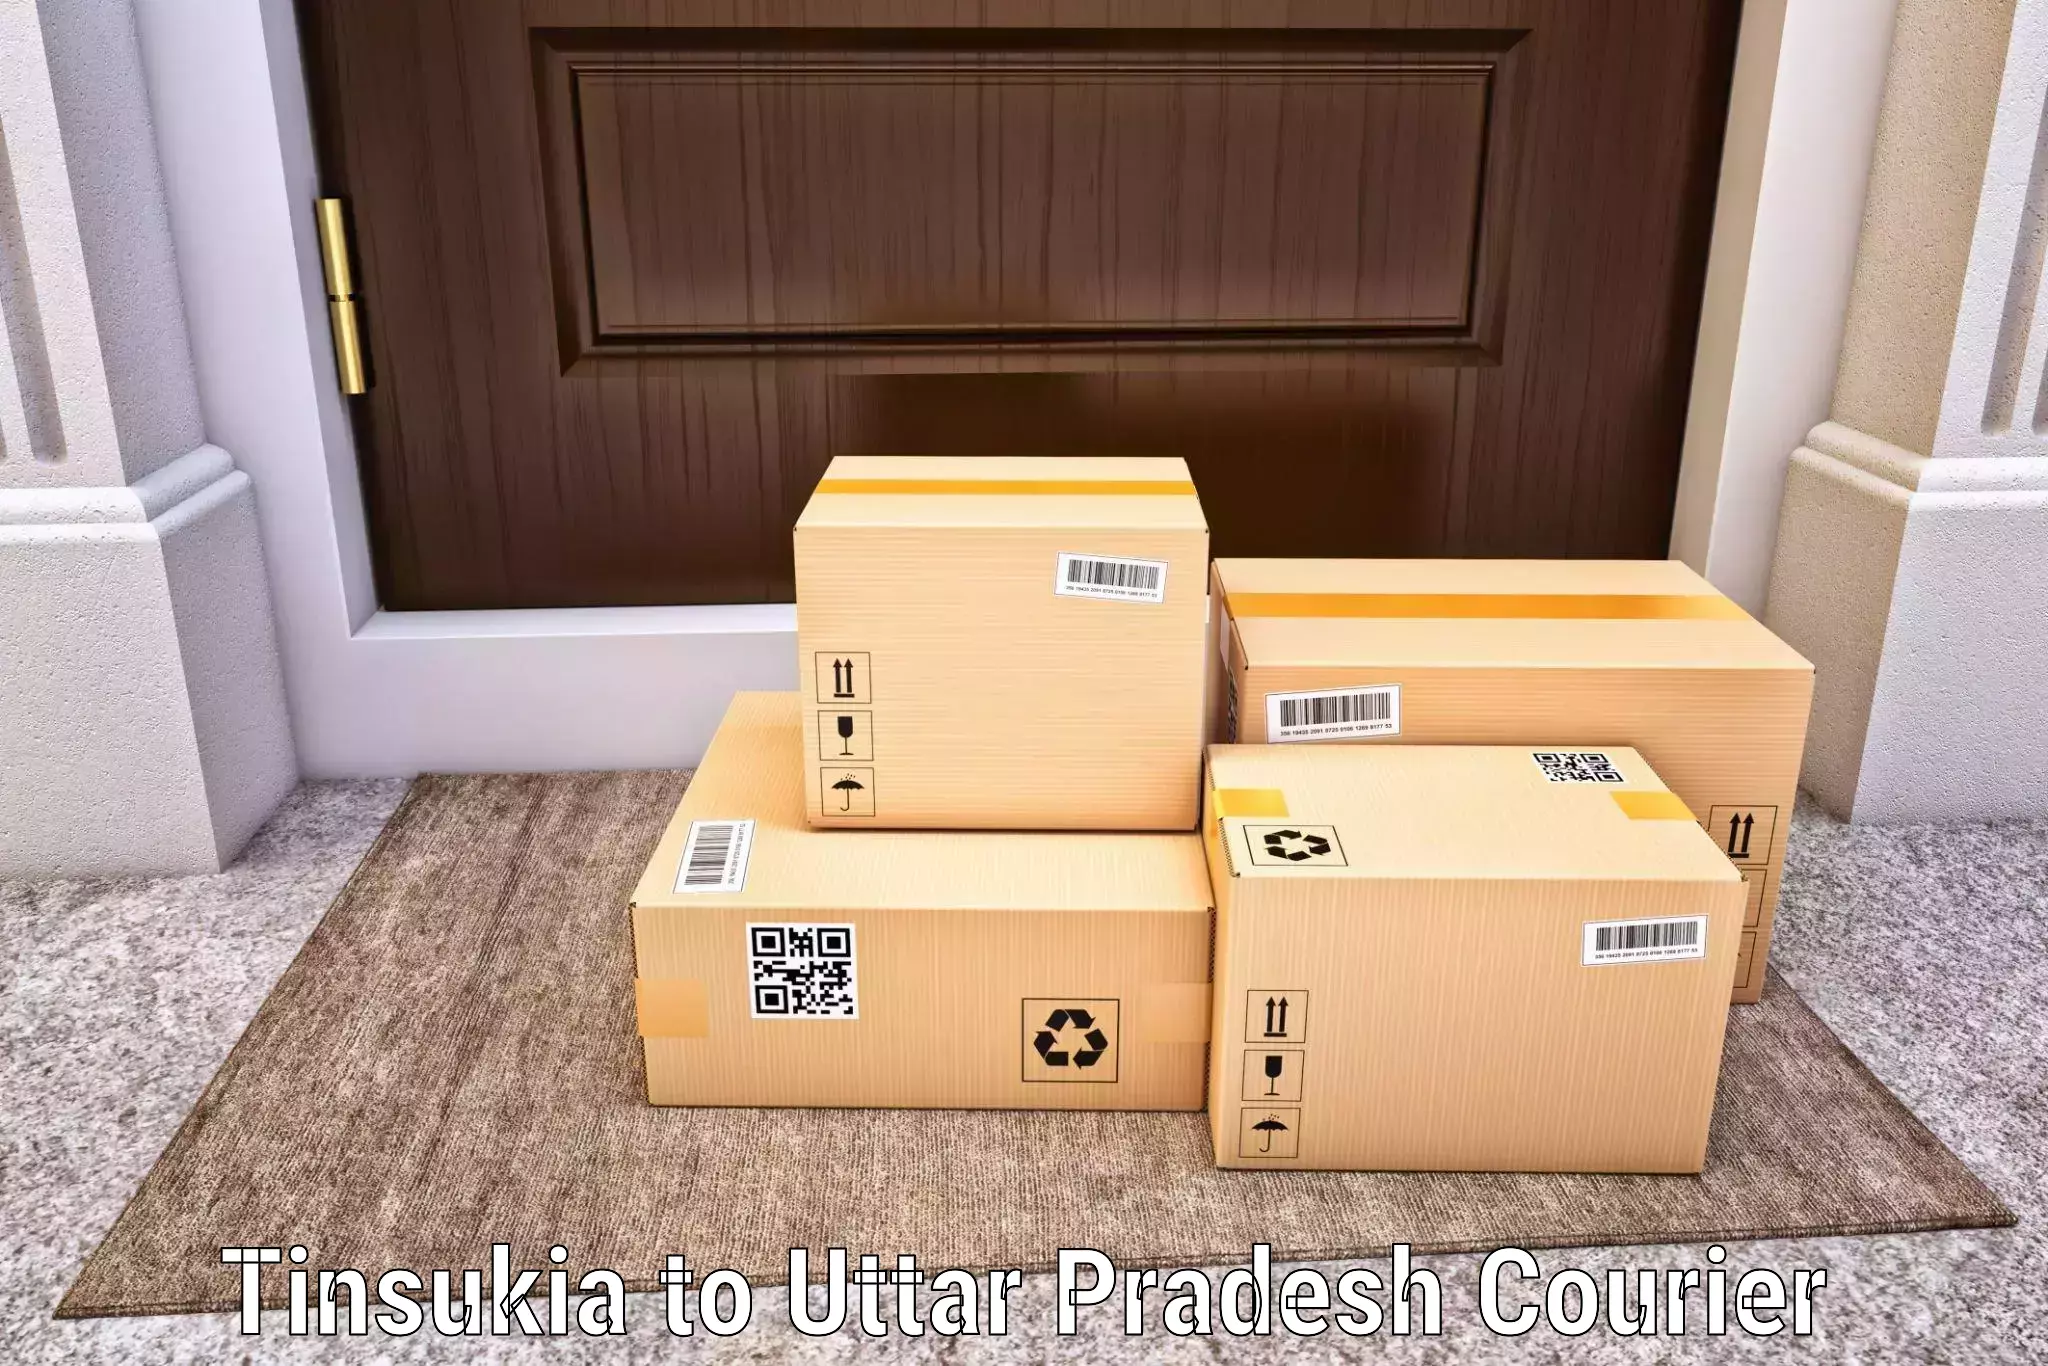 Express mail solutions Tinsukia to Sadat